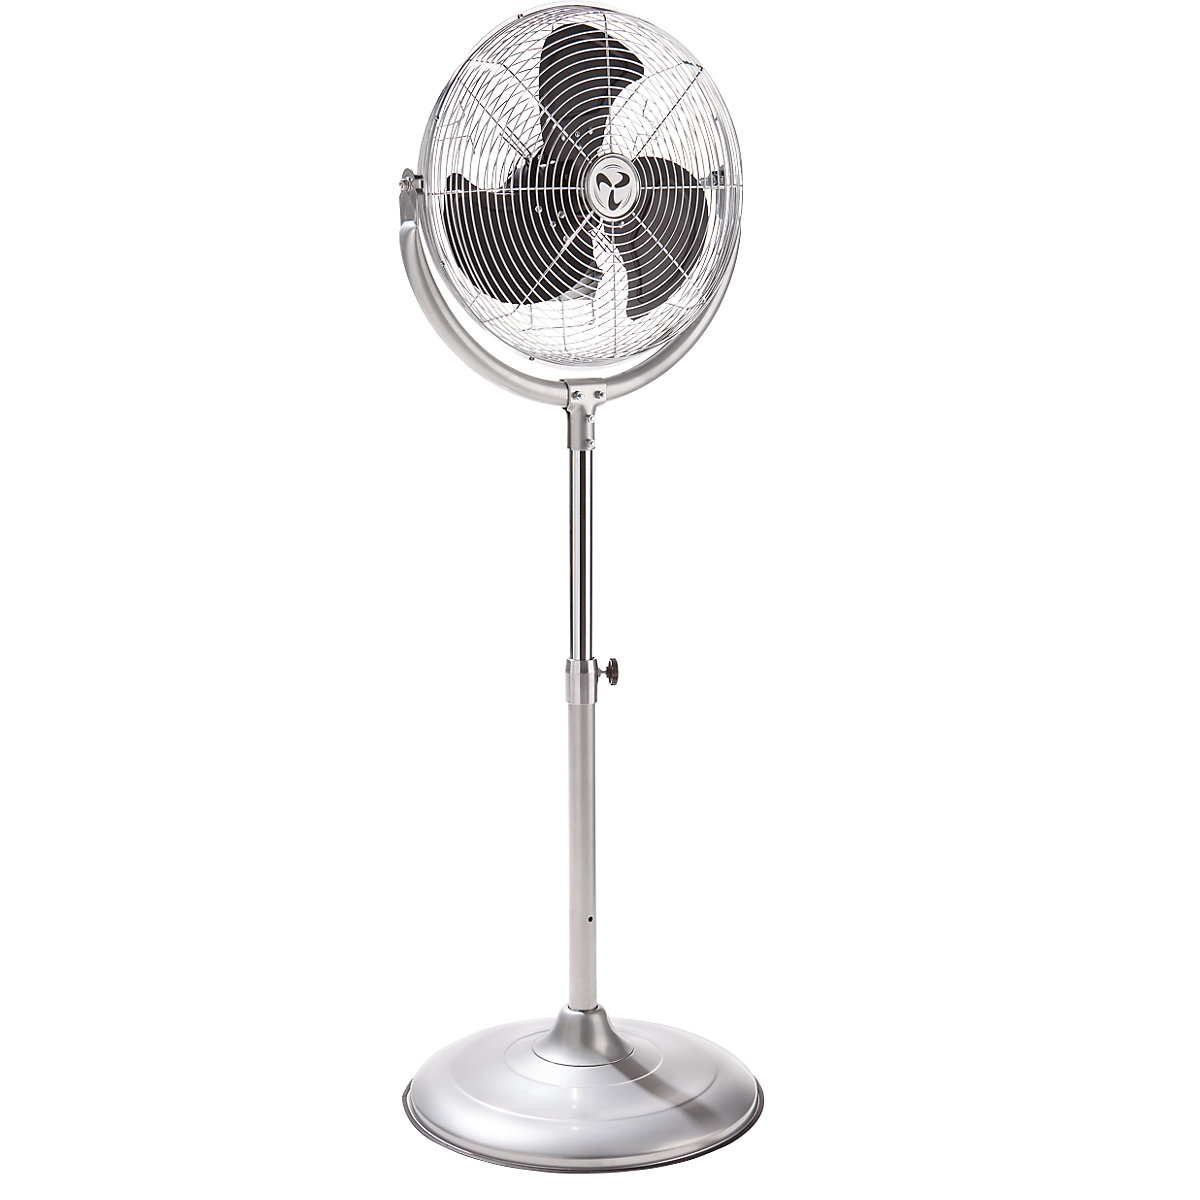 Pedestal fan, height adjustable